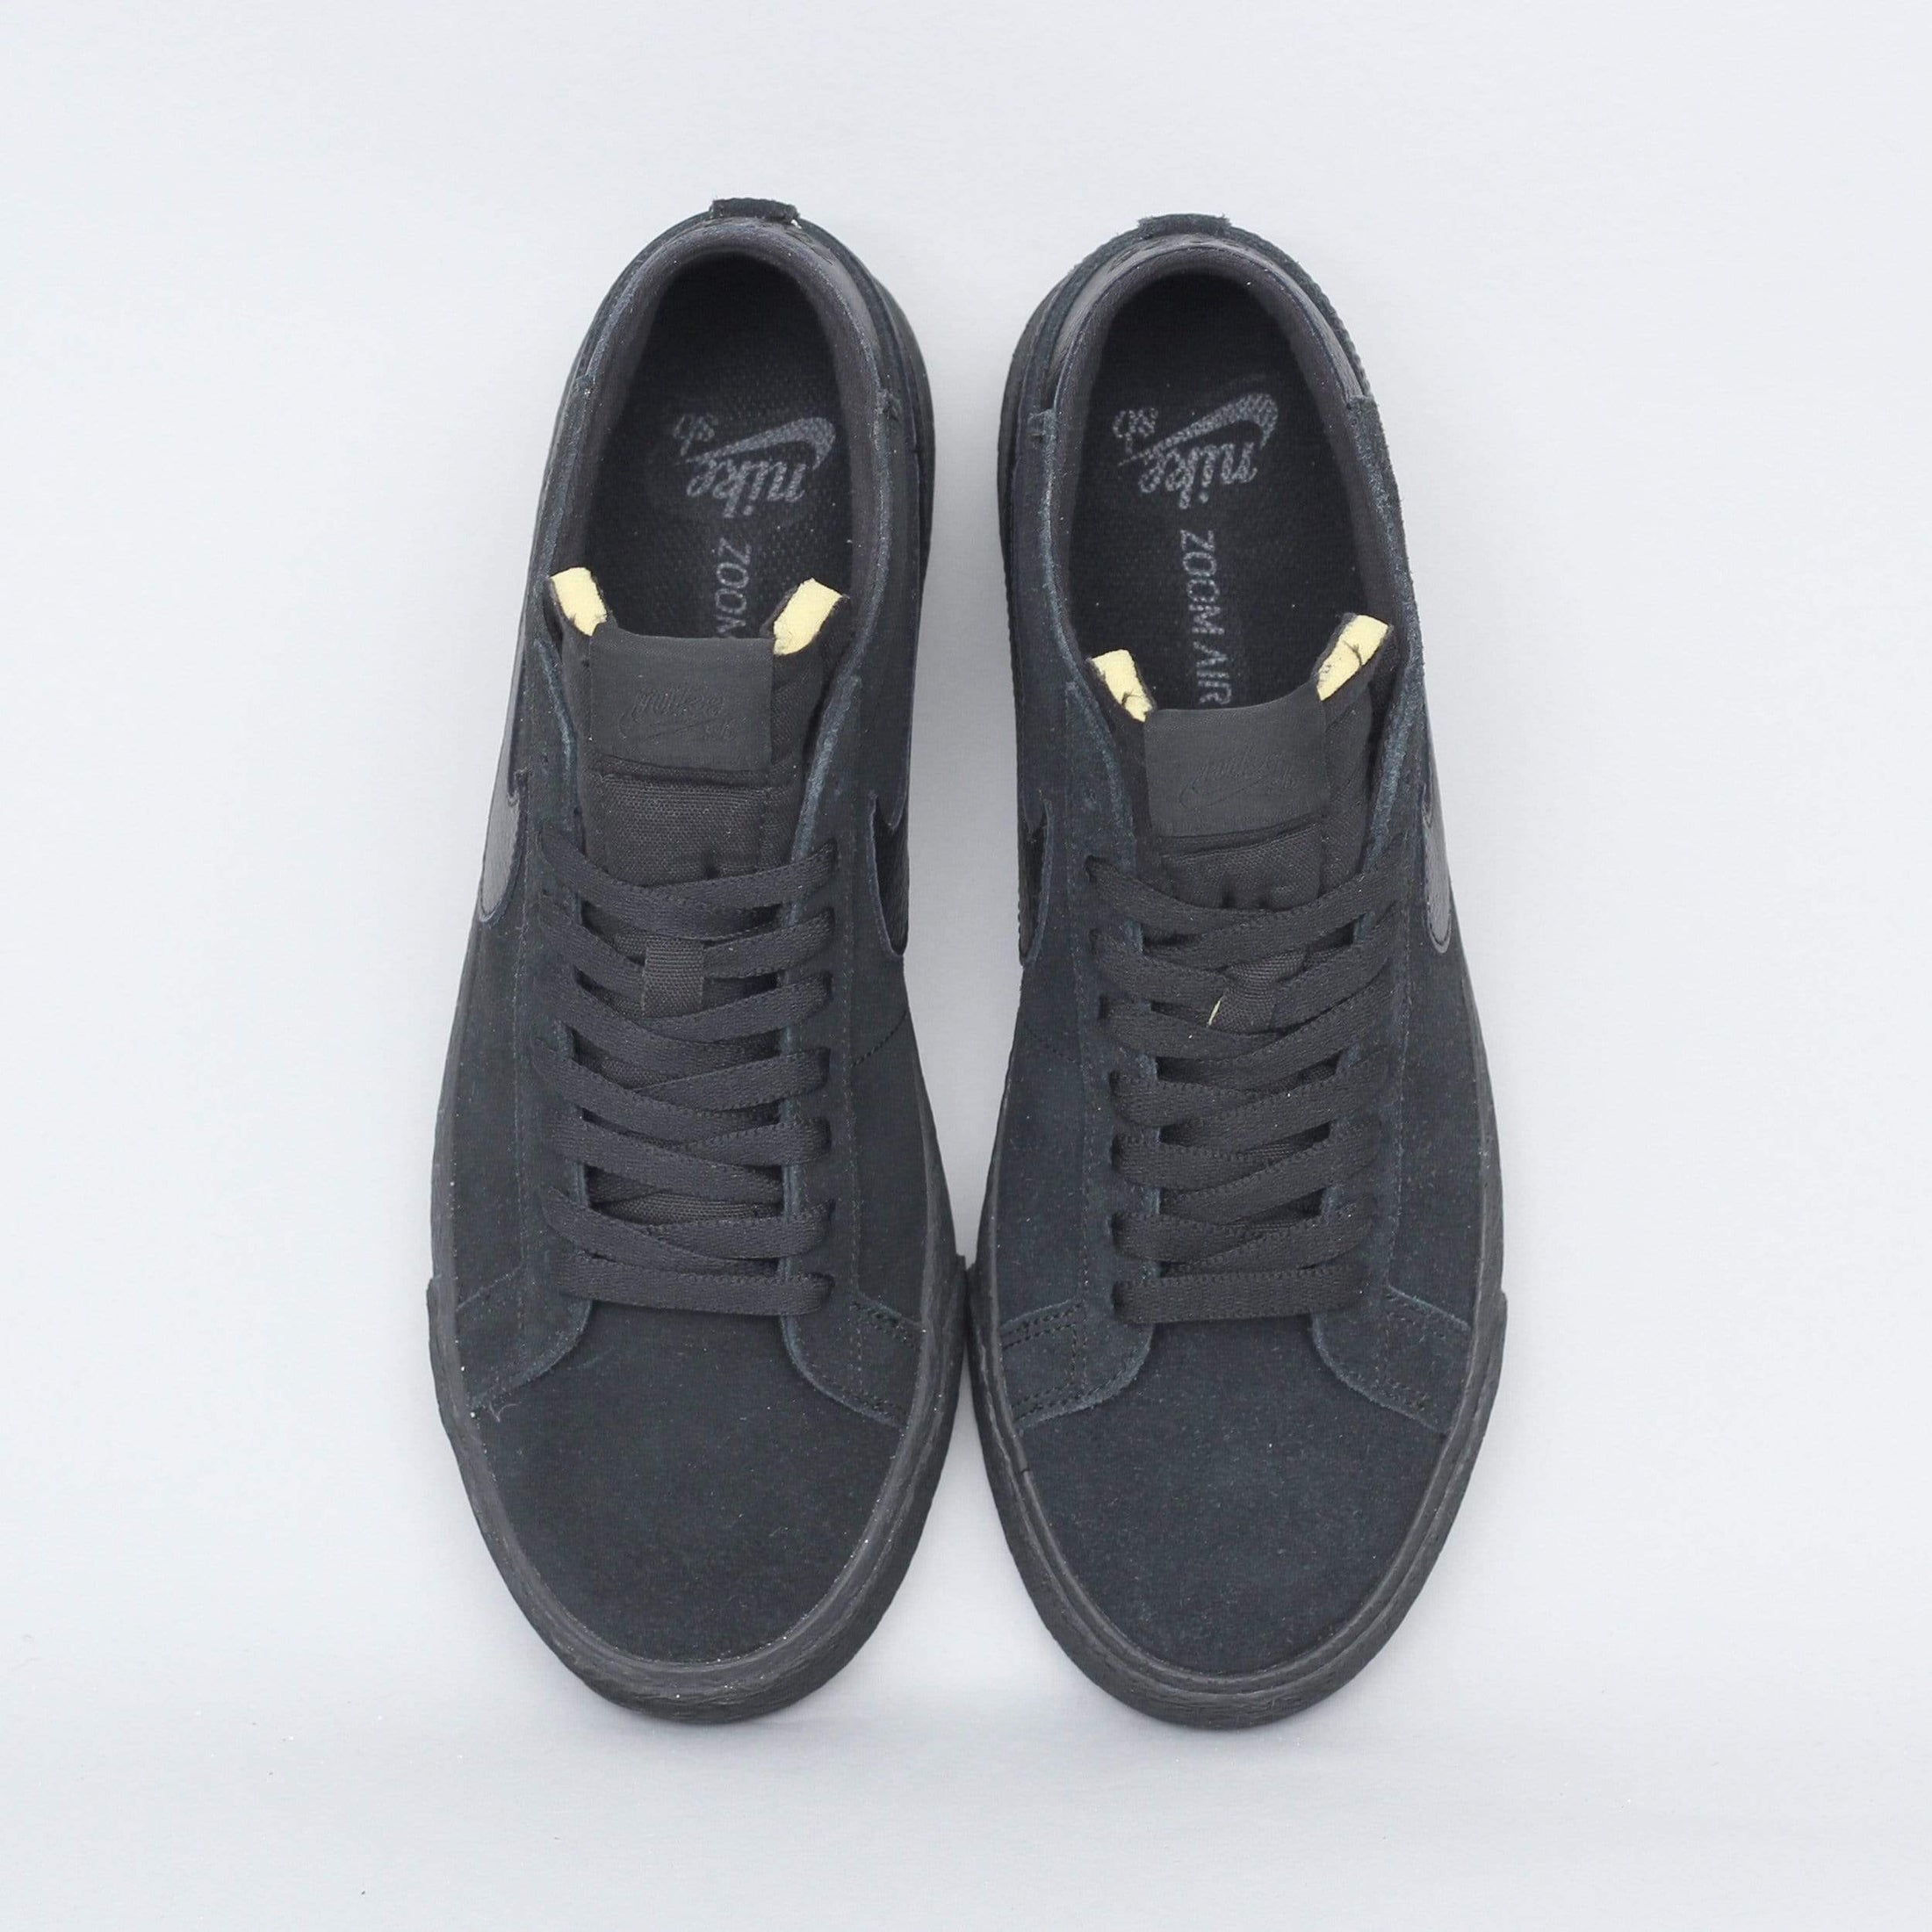 Nike SB Blazer Chukka Shoes Black / Black